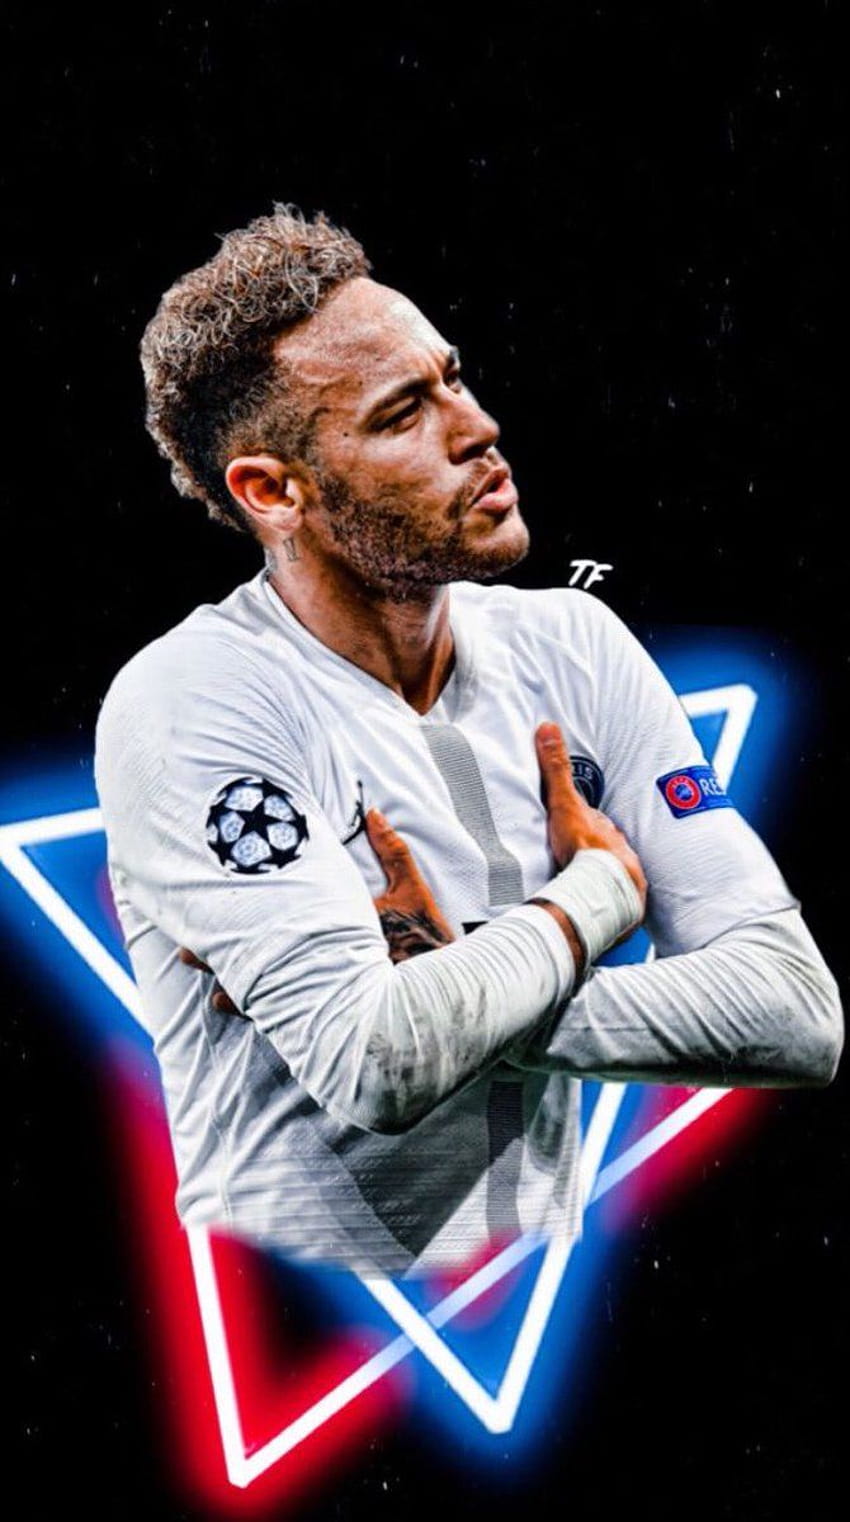 Hãy tìm kiếm bức ảnh nền điện thoại của Neymar để cảm nhận vẻ đẹp và phong cách của ngôi sao bóng đá này ngay trên màn hình điện thoại của bạn.